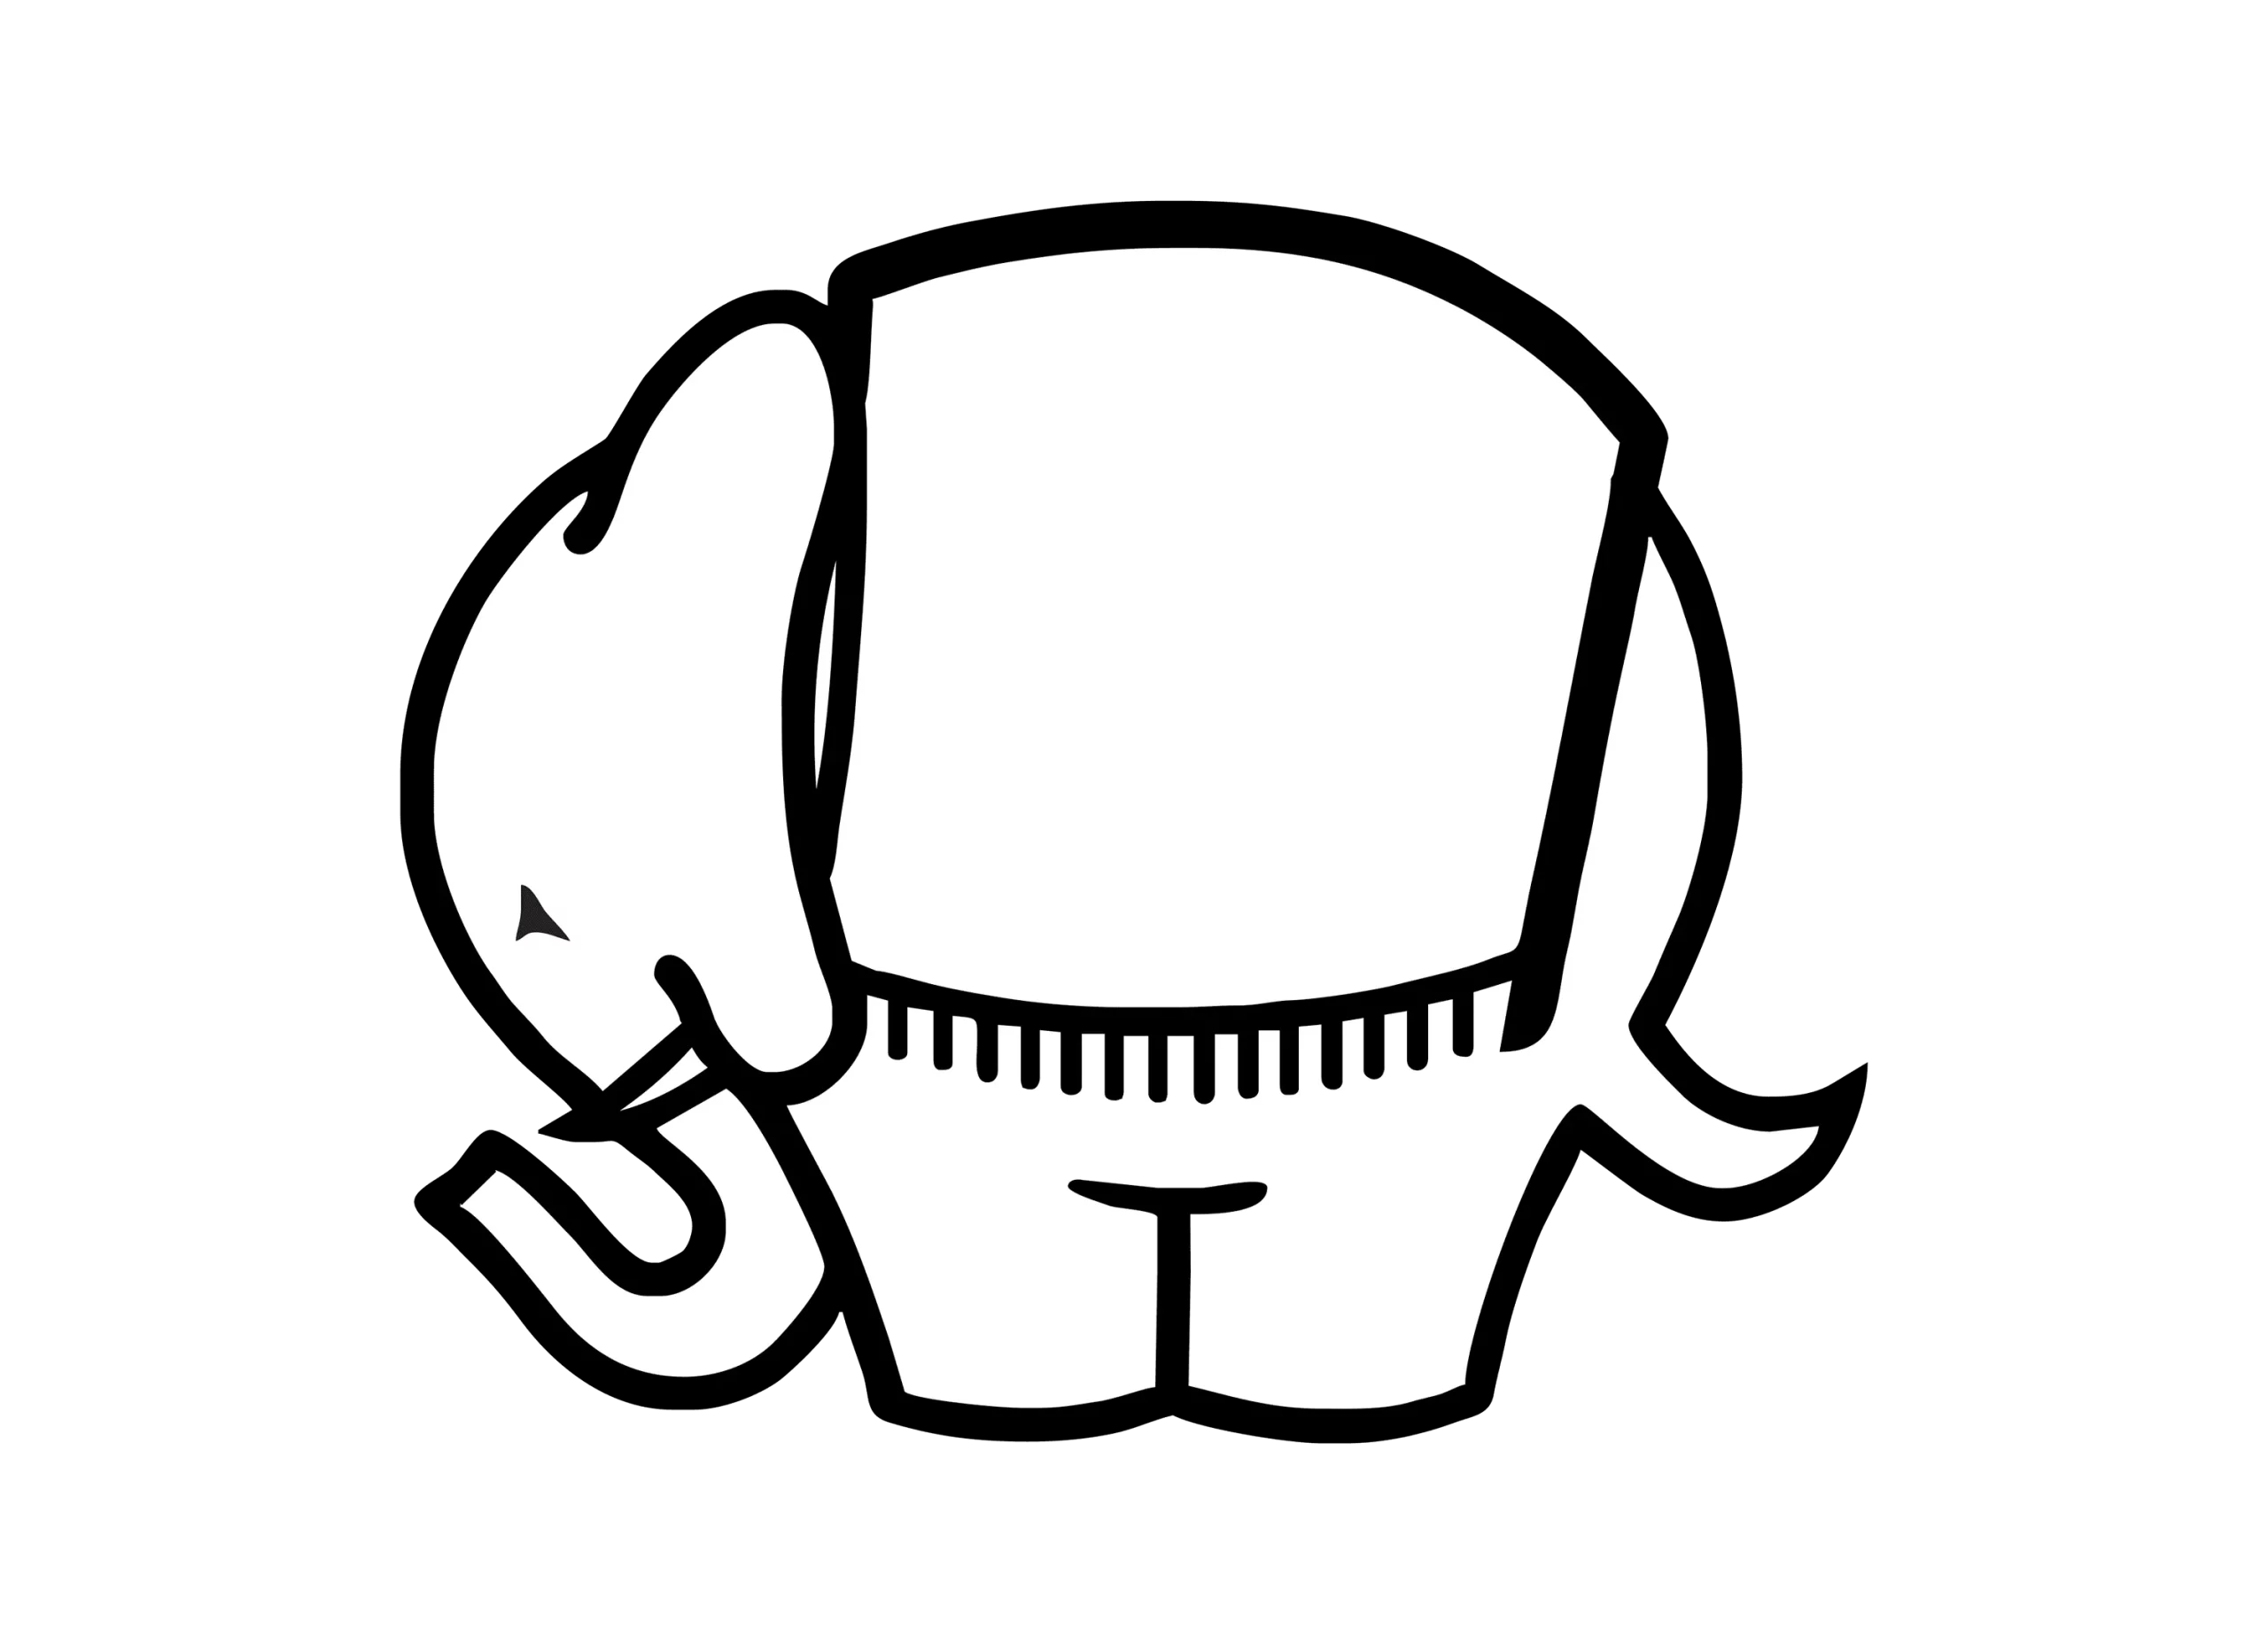 Cagiva logo 1985-2000